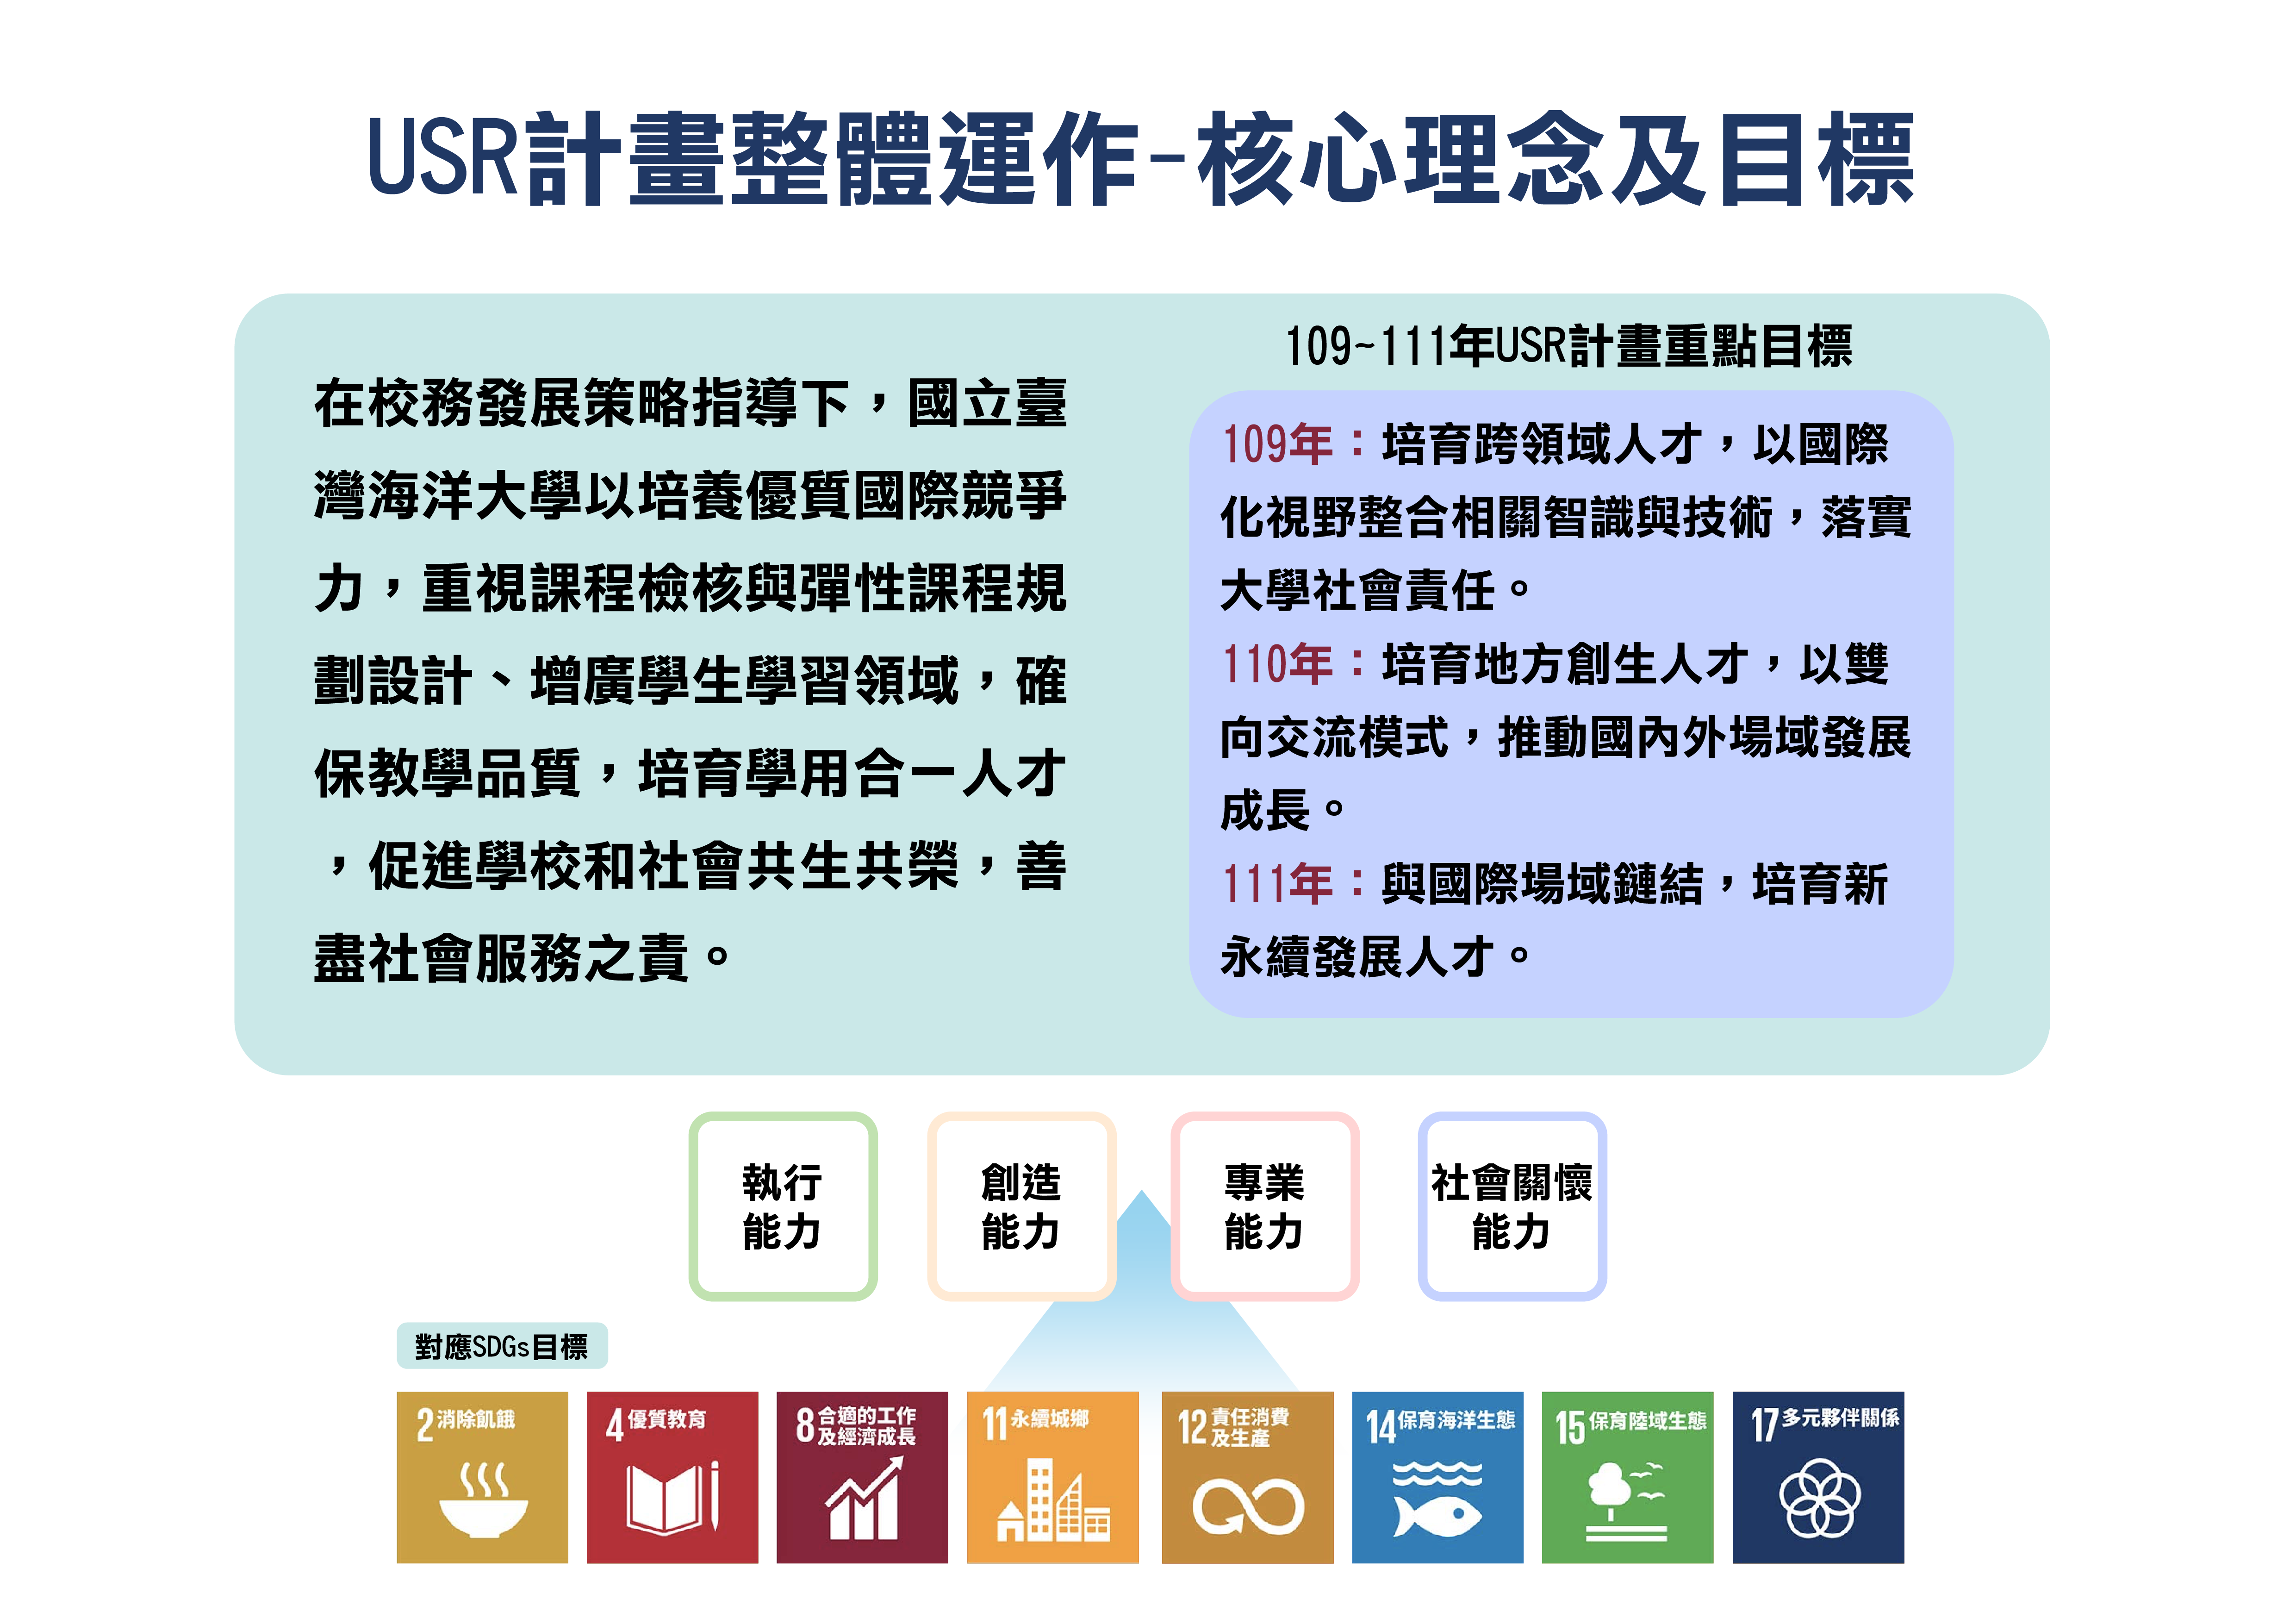 本校USR計畫與課程規劃對應至SDGs目標中的多項指標